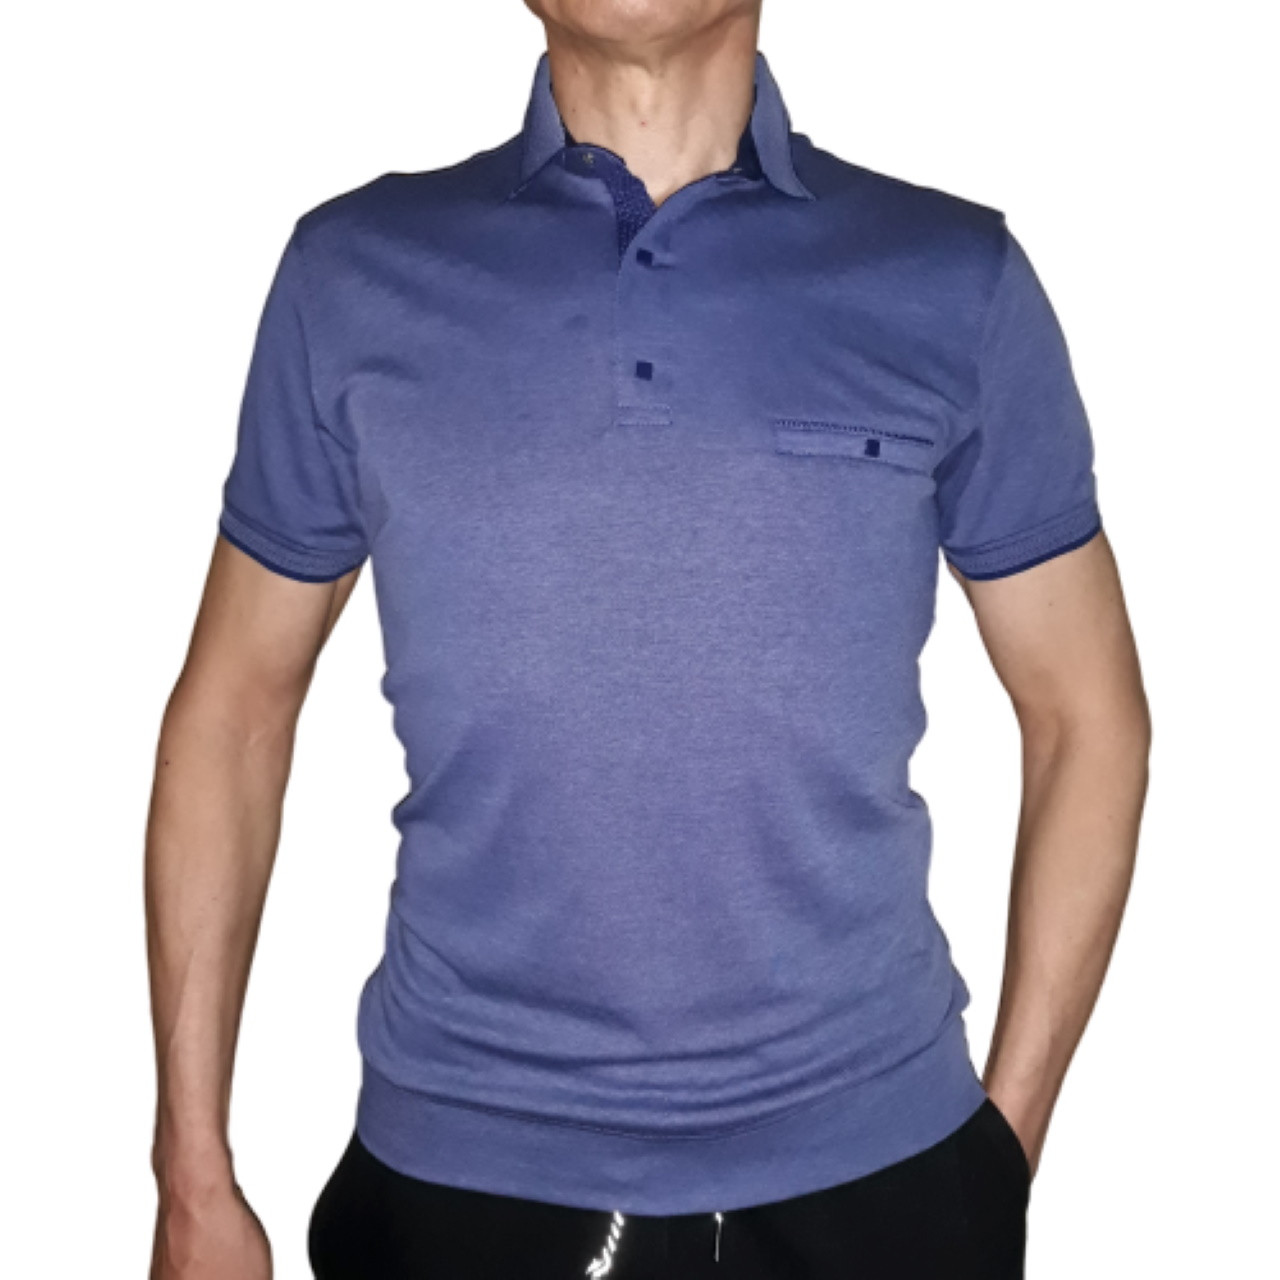 Мужская футболка поло Fibak джинсового цвета на кнопках